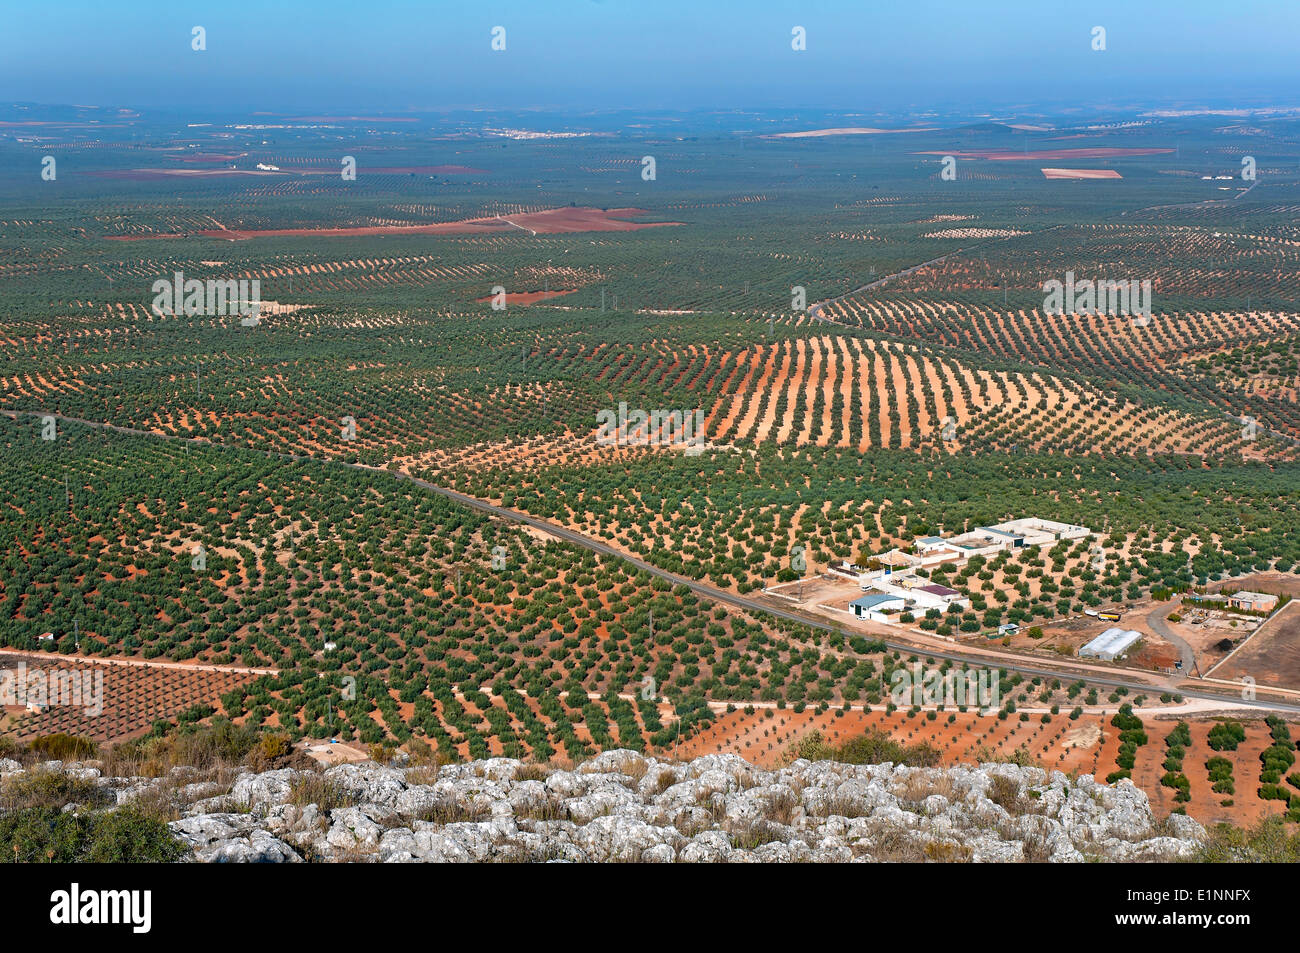 Paesaggio di oliveto, il percorso turistico dei banditi, Alameda, provincia di Malaga, regione dell'Andalusia, Spagna, Europa Foto Stock